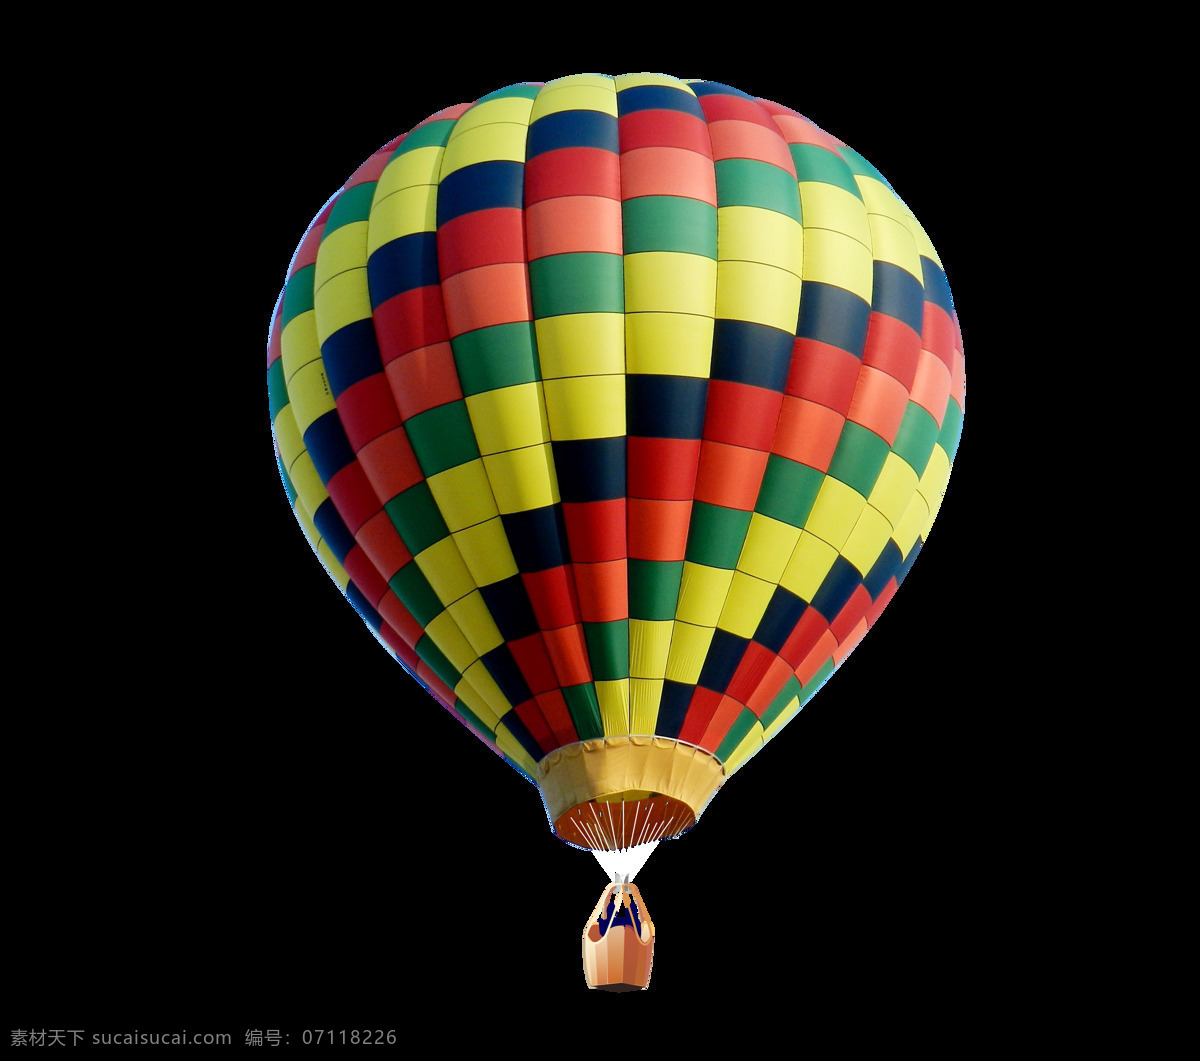 热气球png 热气球 热气球素材 气球 各种热气球 彩色热气球 彩色气球 氢气球 开业气球 五彩热气球 气球素材 卡通热气球 红色热气球 球 婚庆素材 婚礼素材 绿色热气球 蓝色热气球 红色热气流 白色热气球